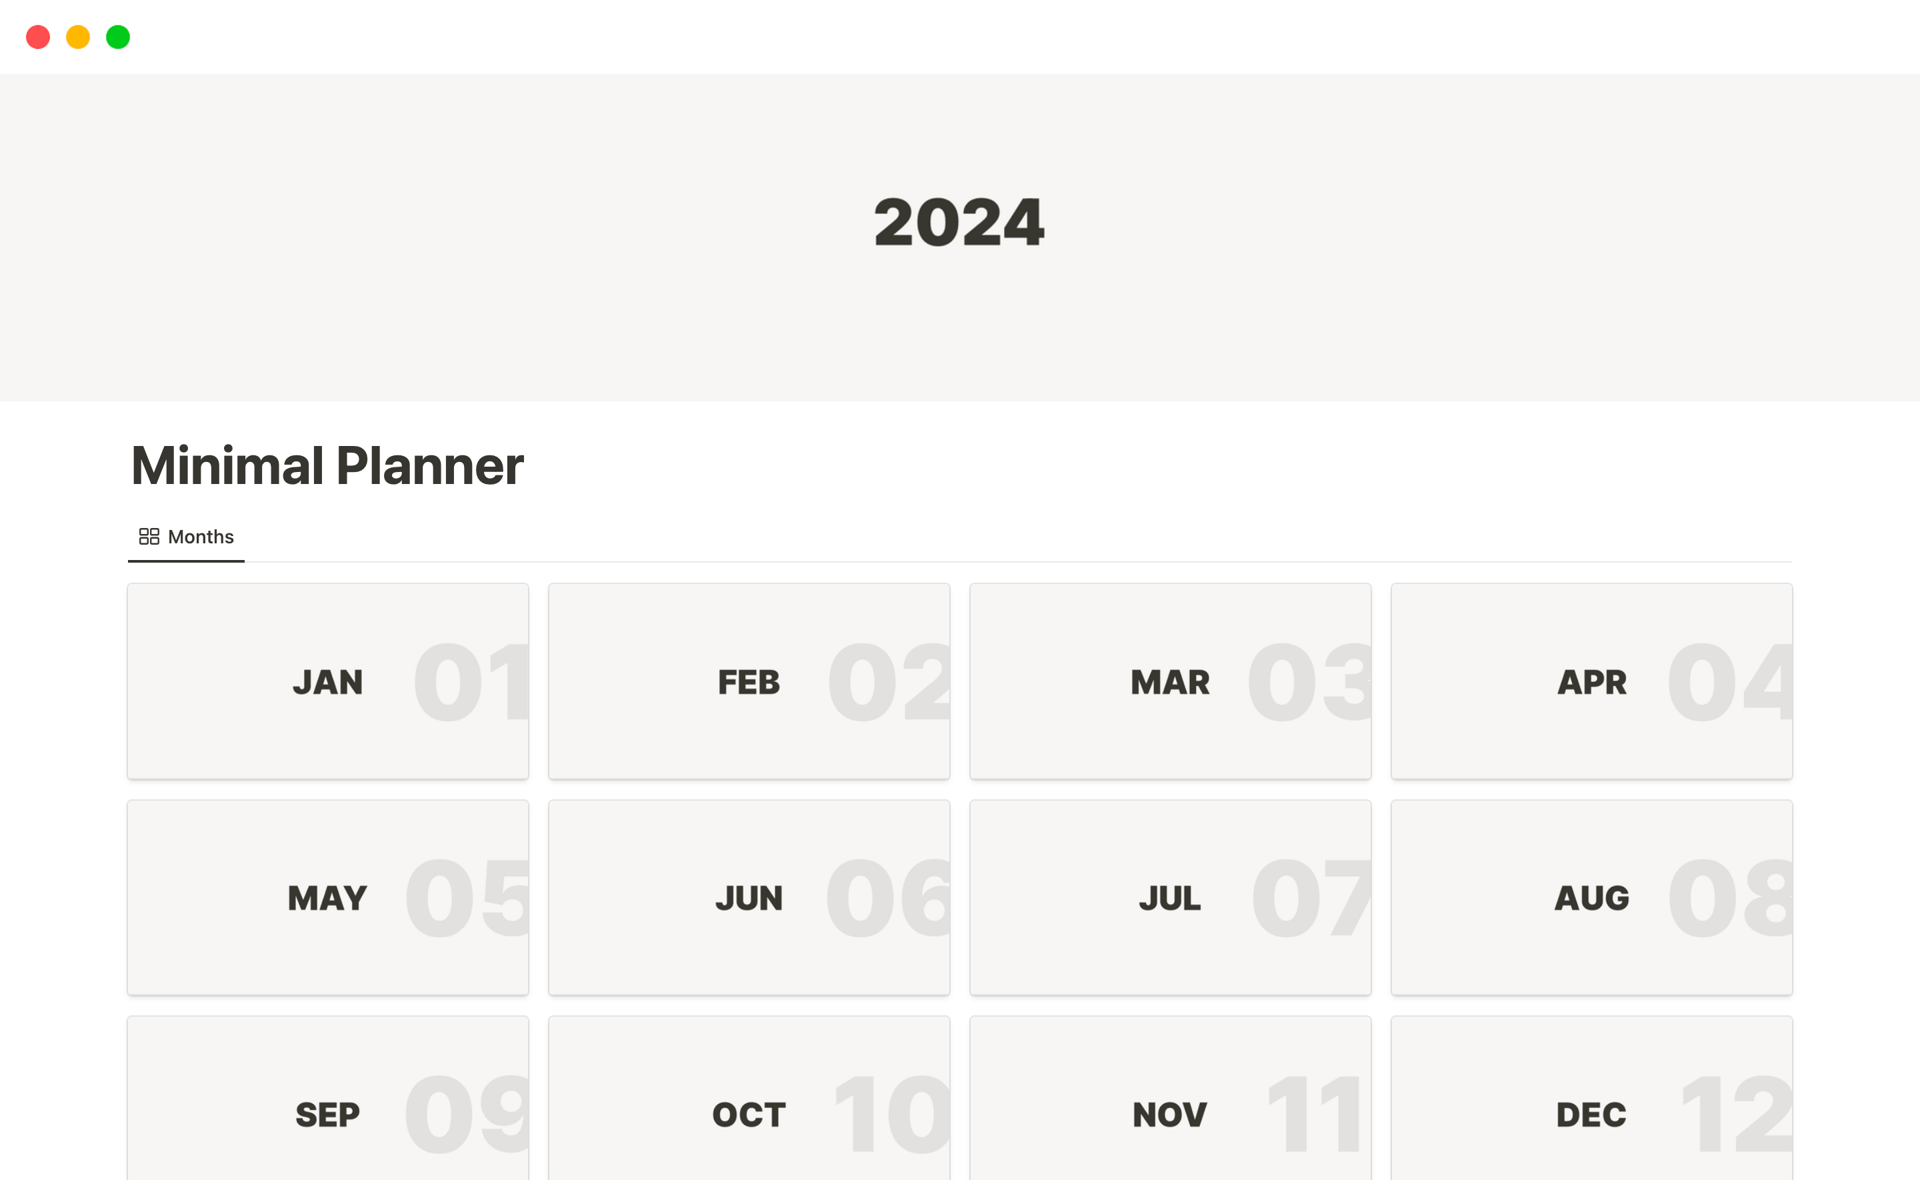 Aperçu du modèle de Monthly Planner